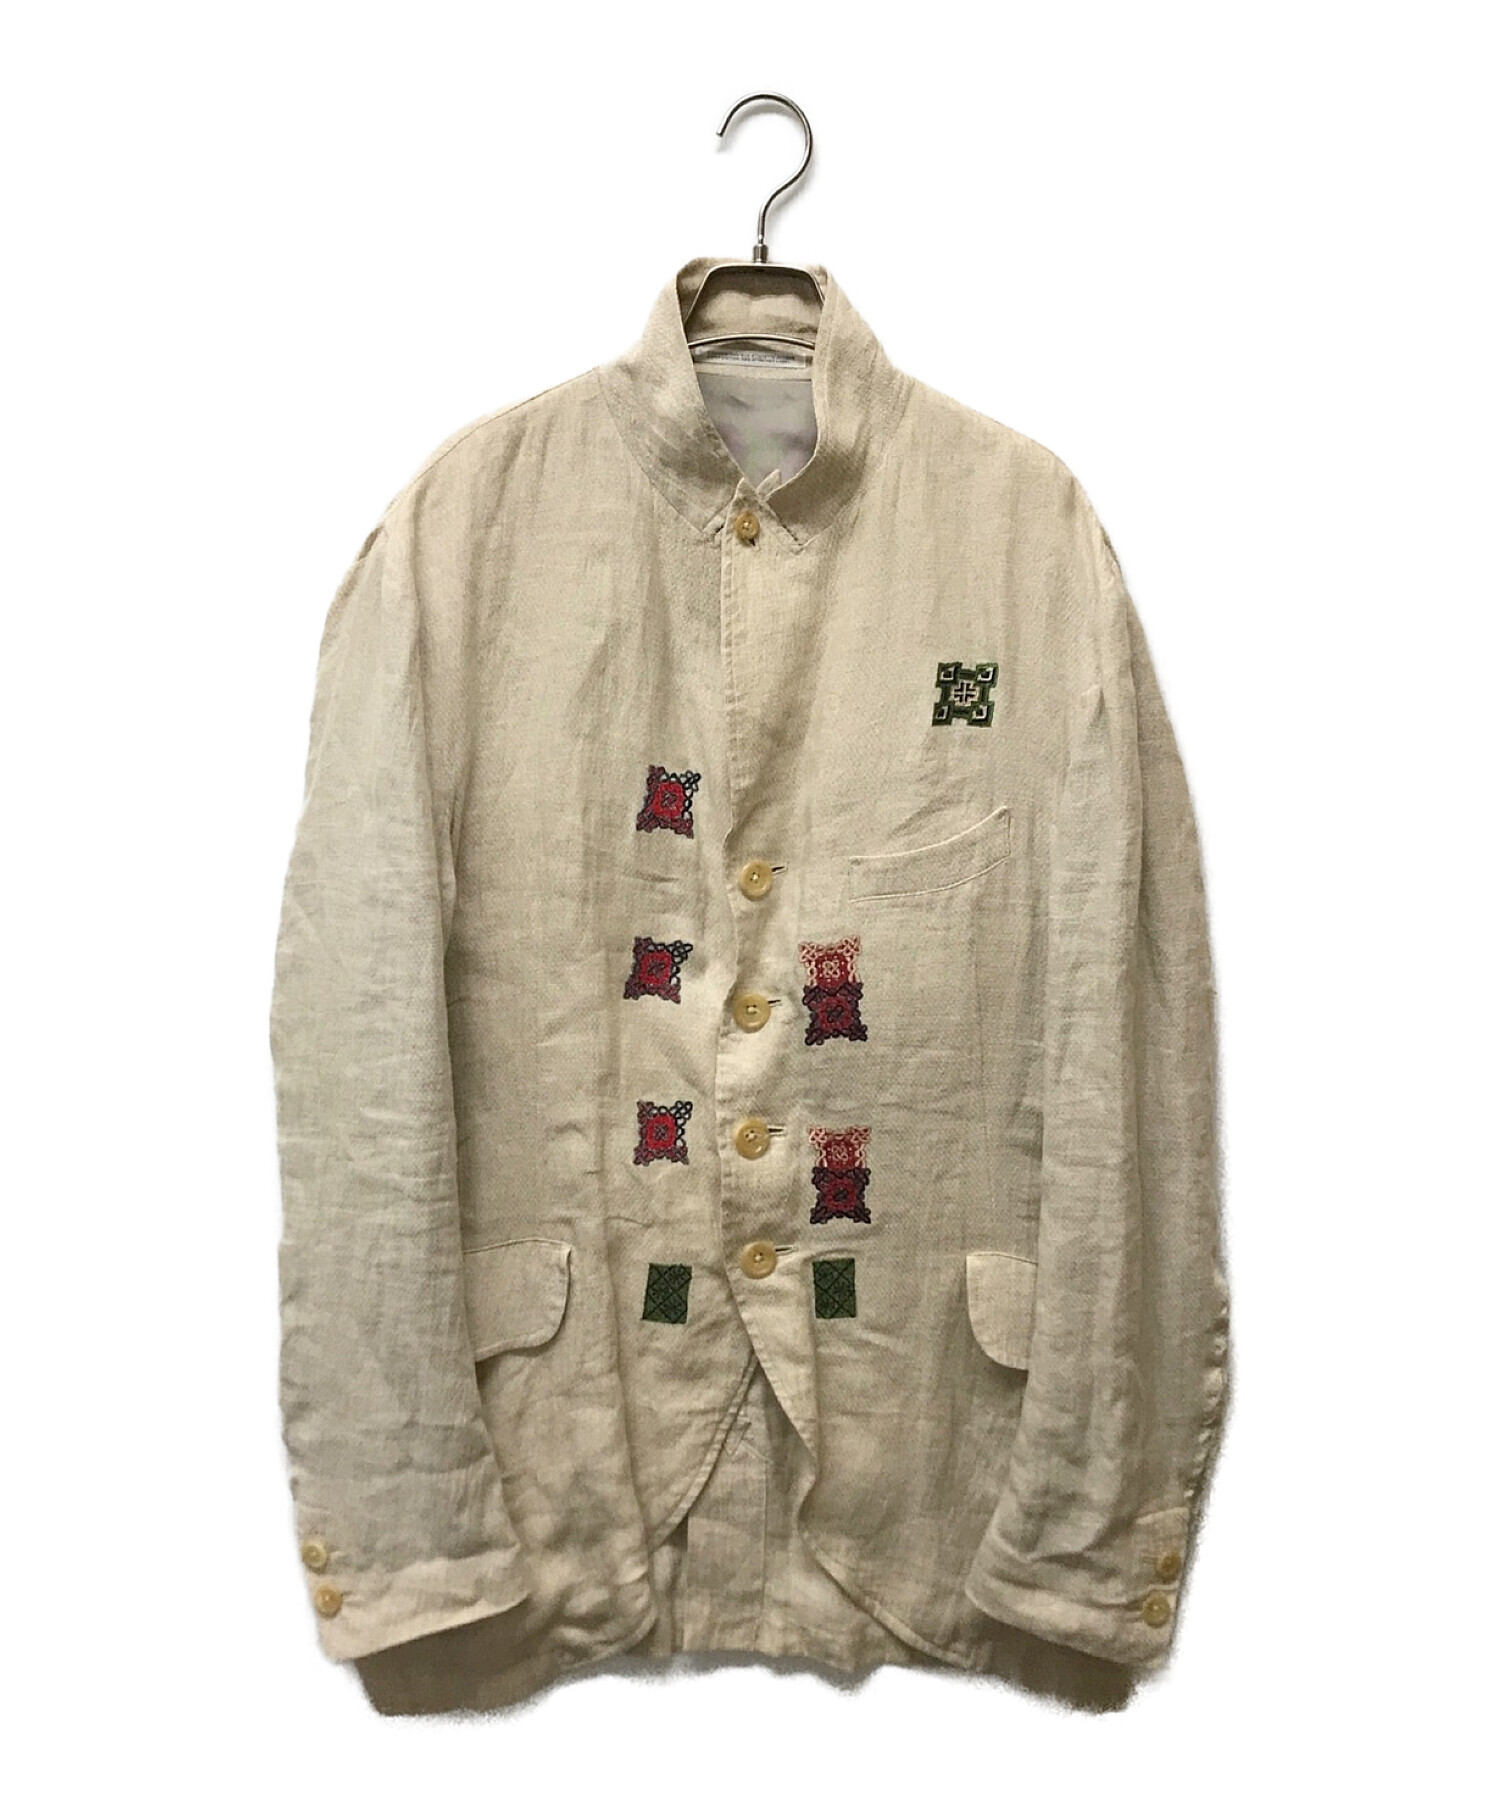 Yohji Yamamoto pour homme (ヨウジヤマモト プールオム) リネンコットン刺繍テーラードジャケット ベージュ サイズ:4